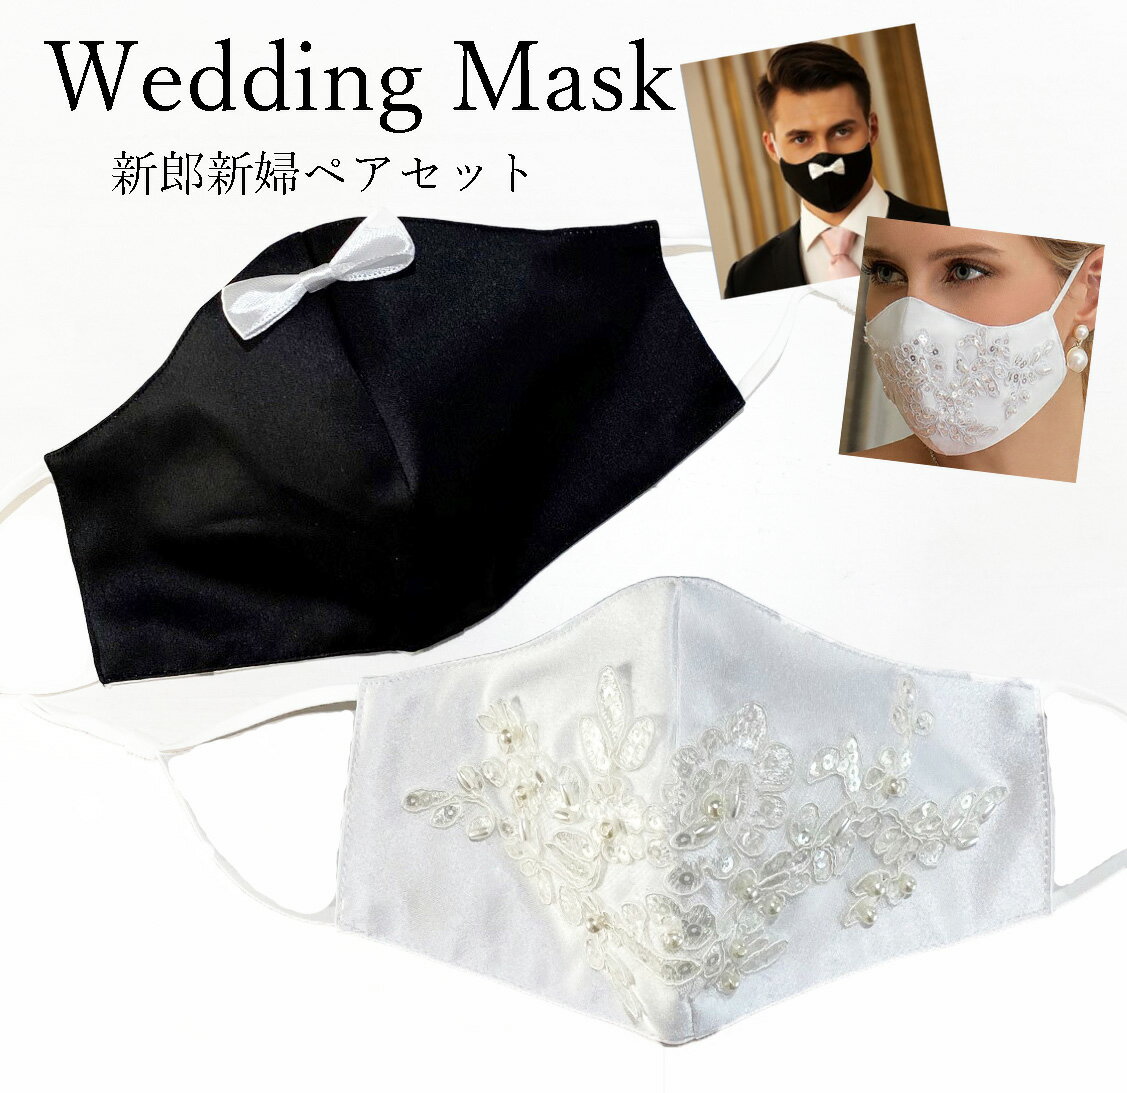 新郎新婦用ペアセット ラグジュアリーウェディングマスク 結婚式用マスク